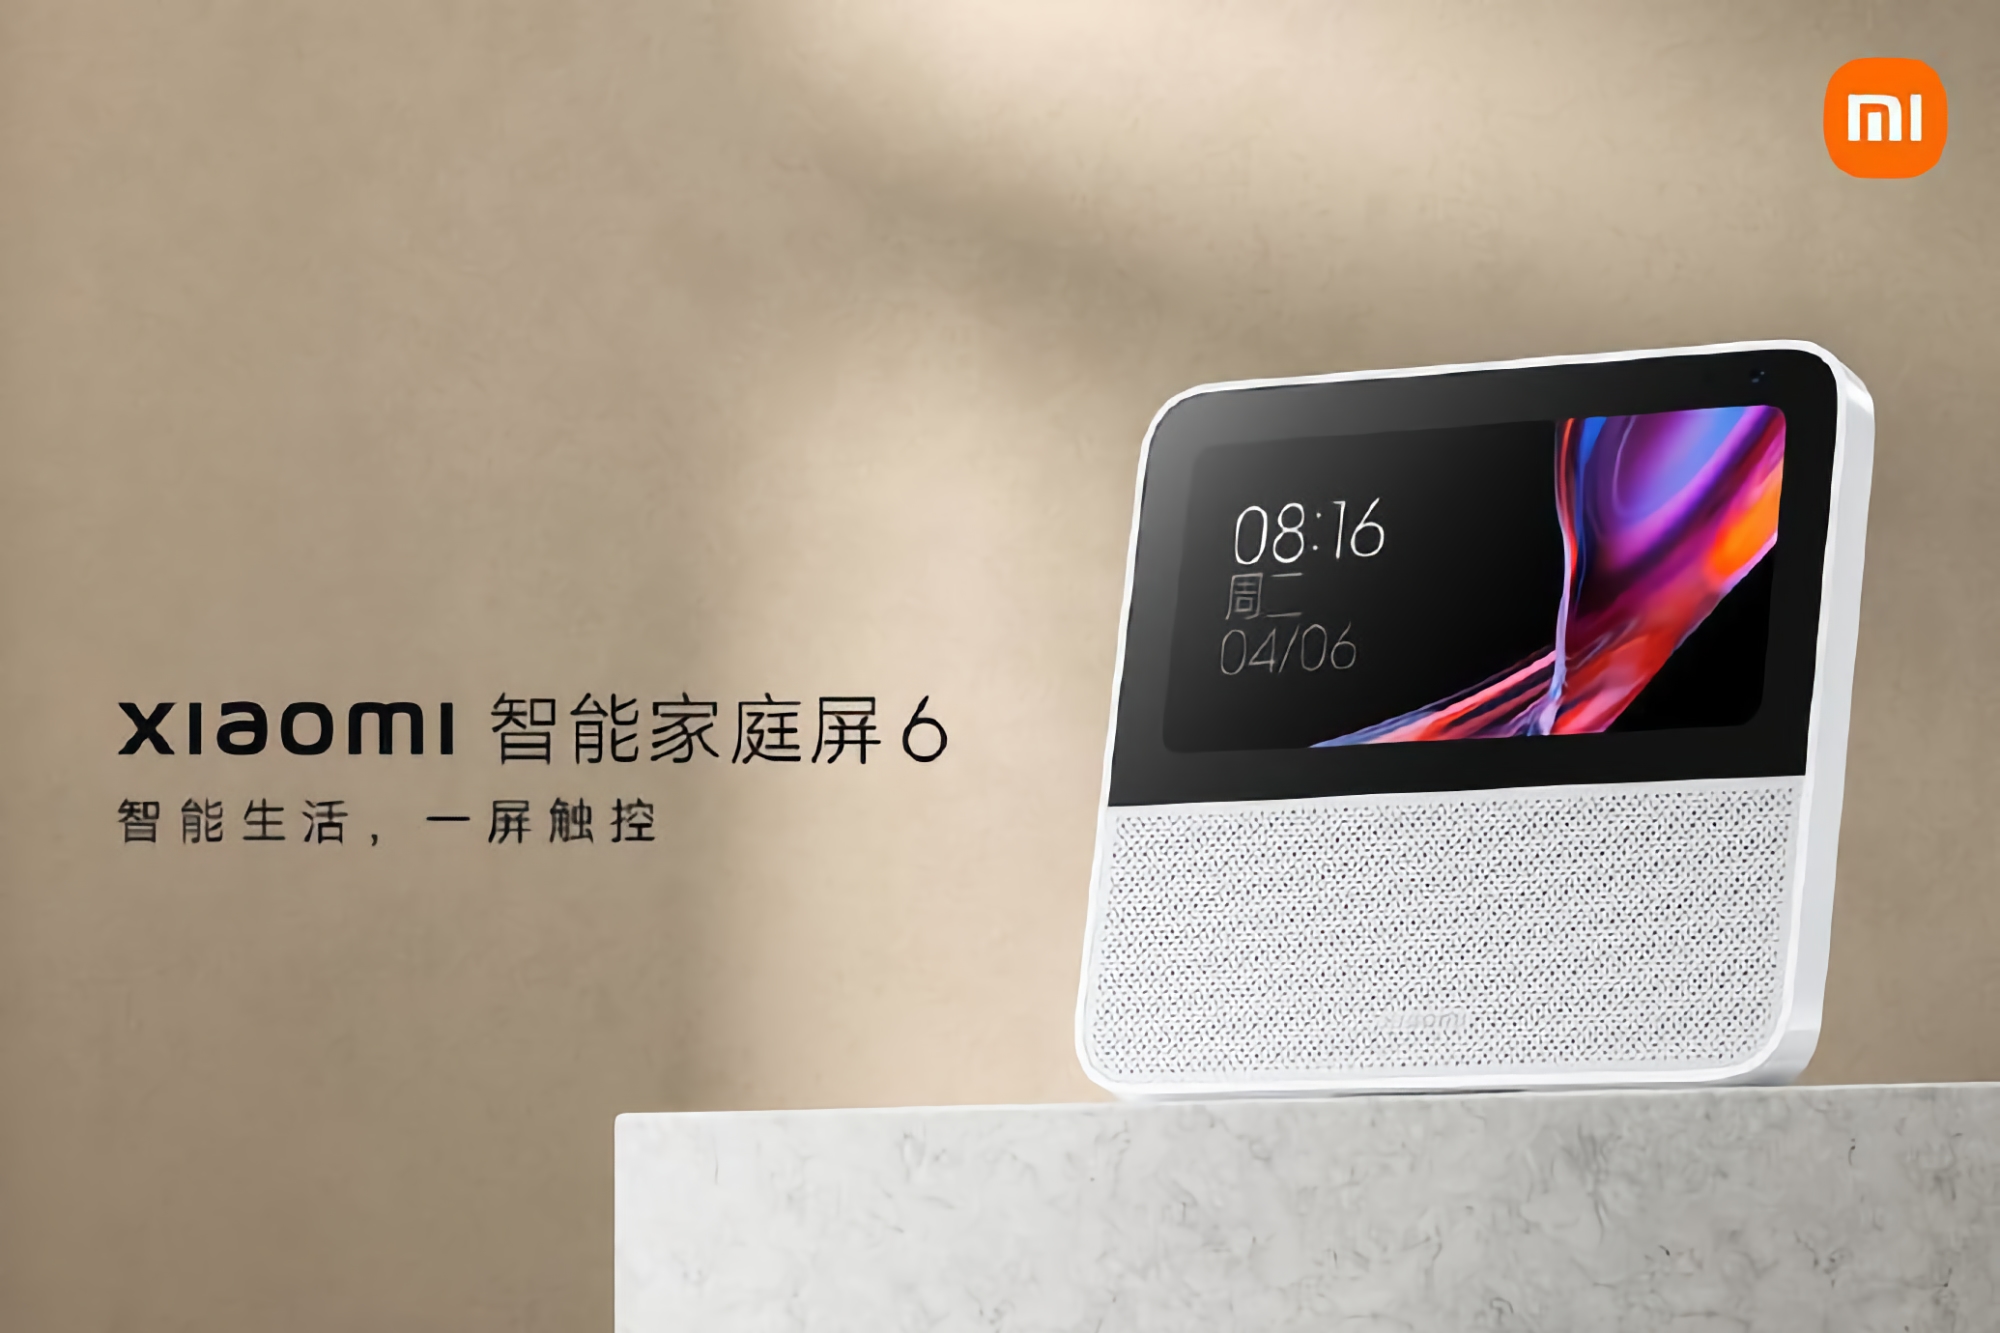 Xiaomi wprowadziło Smart Home Display 6: 6-calowy wyświetlacz, aparat 2 MP i wbudowany asystent głosowy za 52 USD